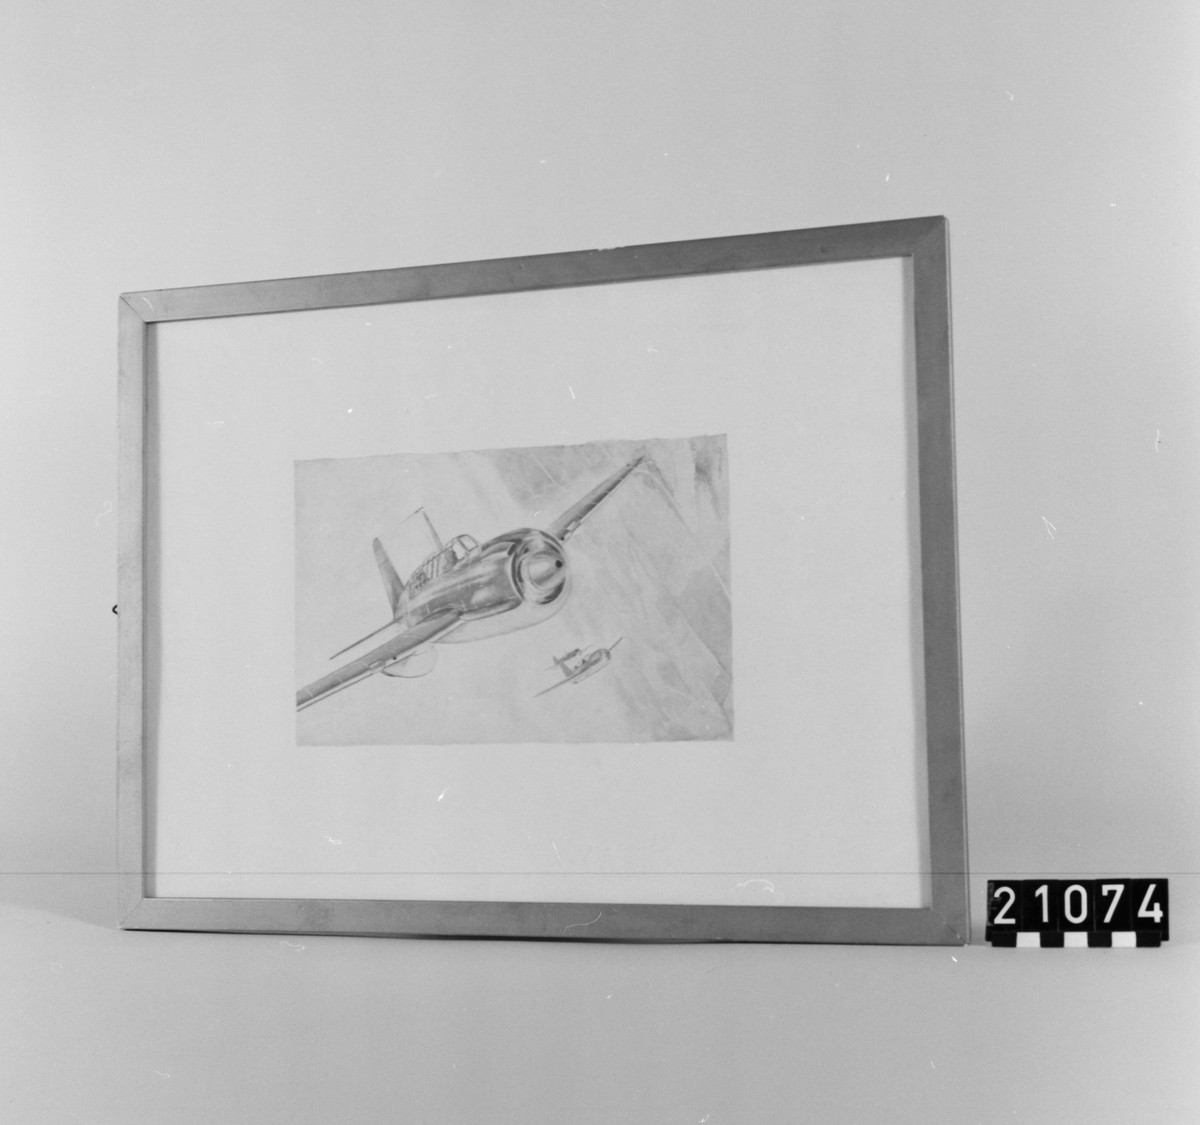 Motiv av flygplan under flygning, i bakgrunden ytterligare två plan. I glas och ram.